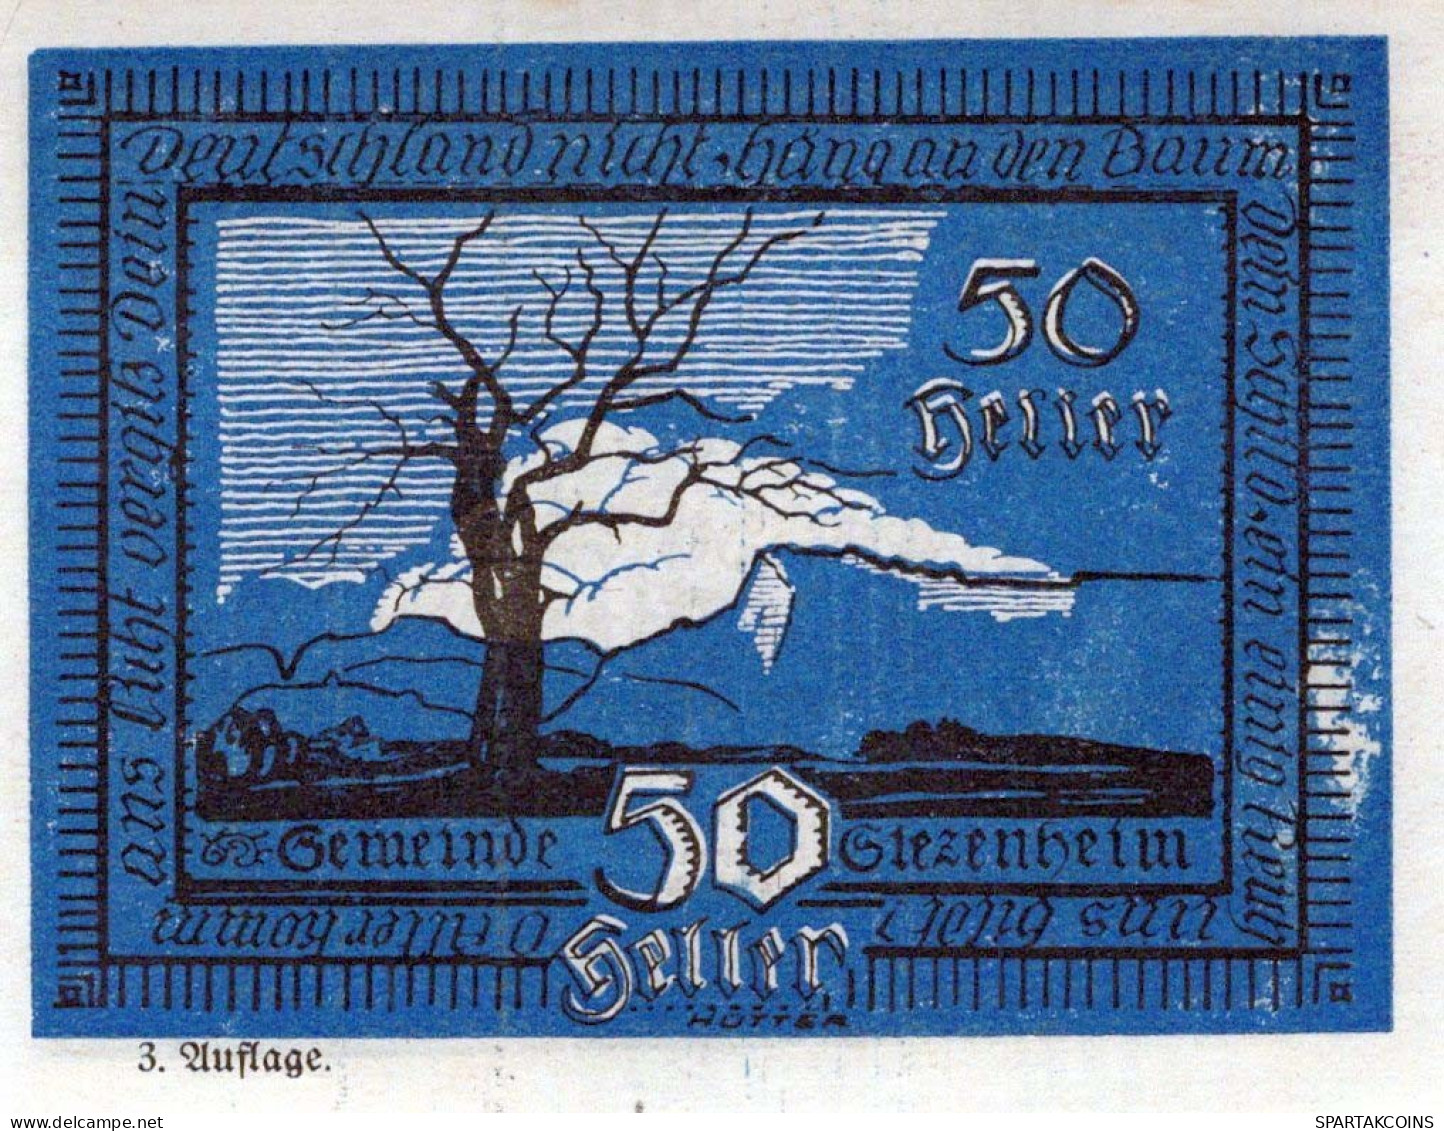 50 HELLER 1920 Stadt SIEZENHEIM Salzburg Österreich Notgeld Banknote #PF177 - [11] Emissions Locales